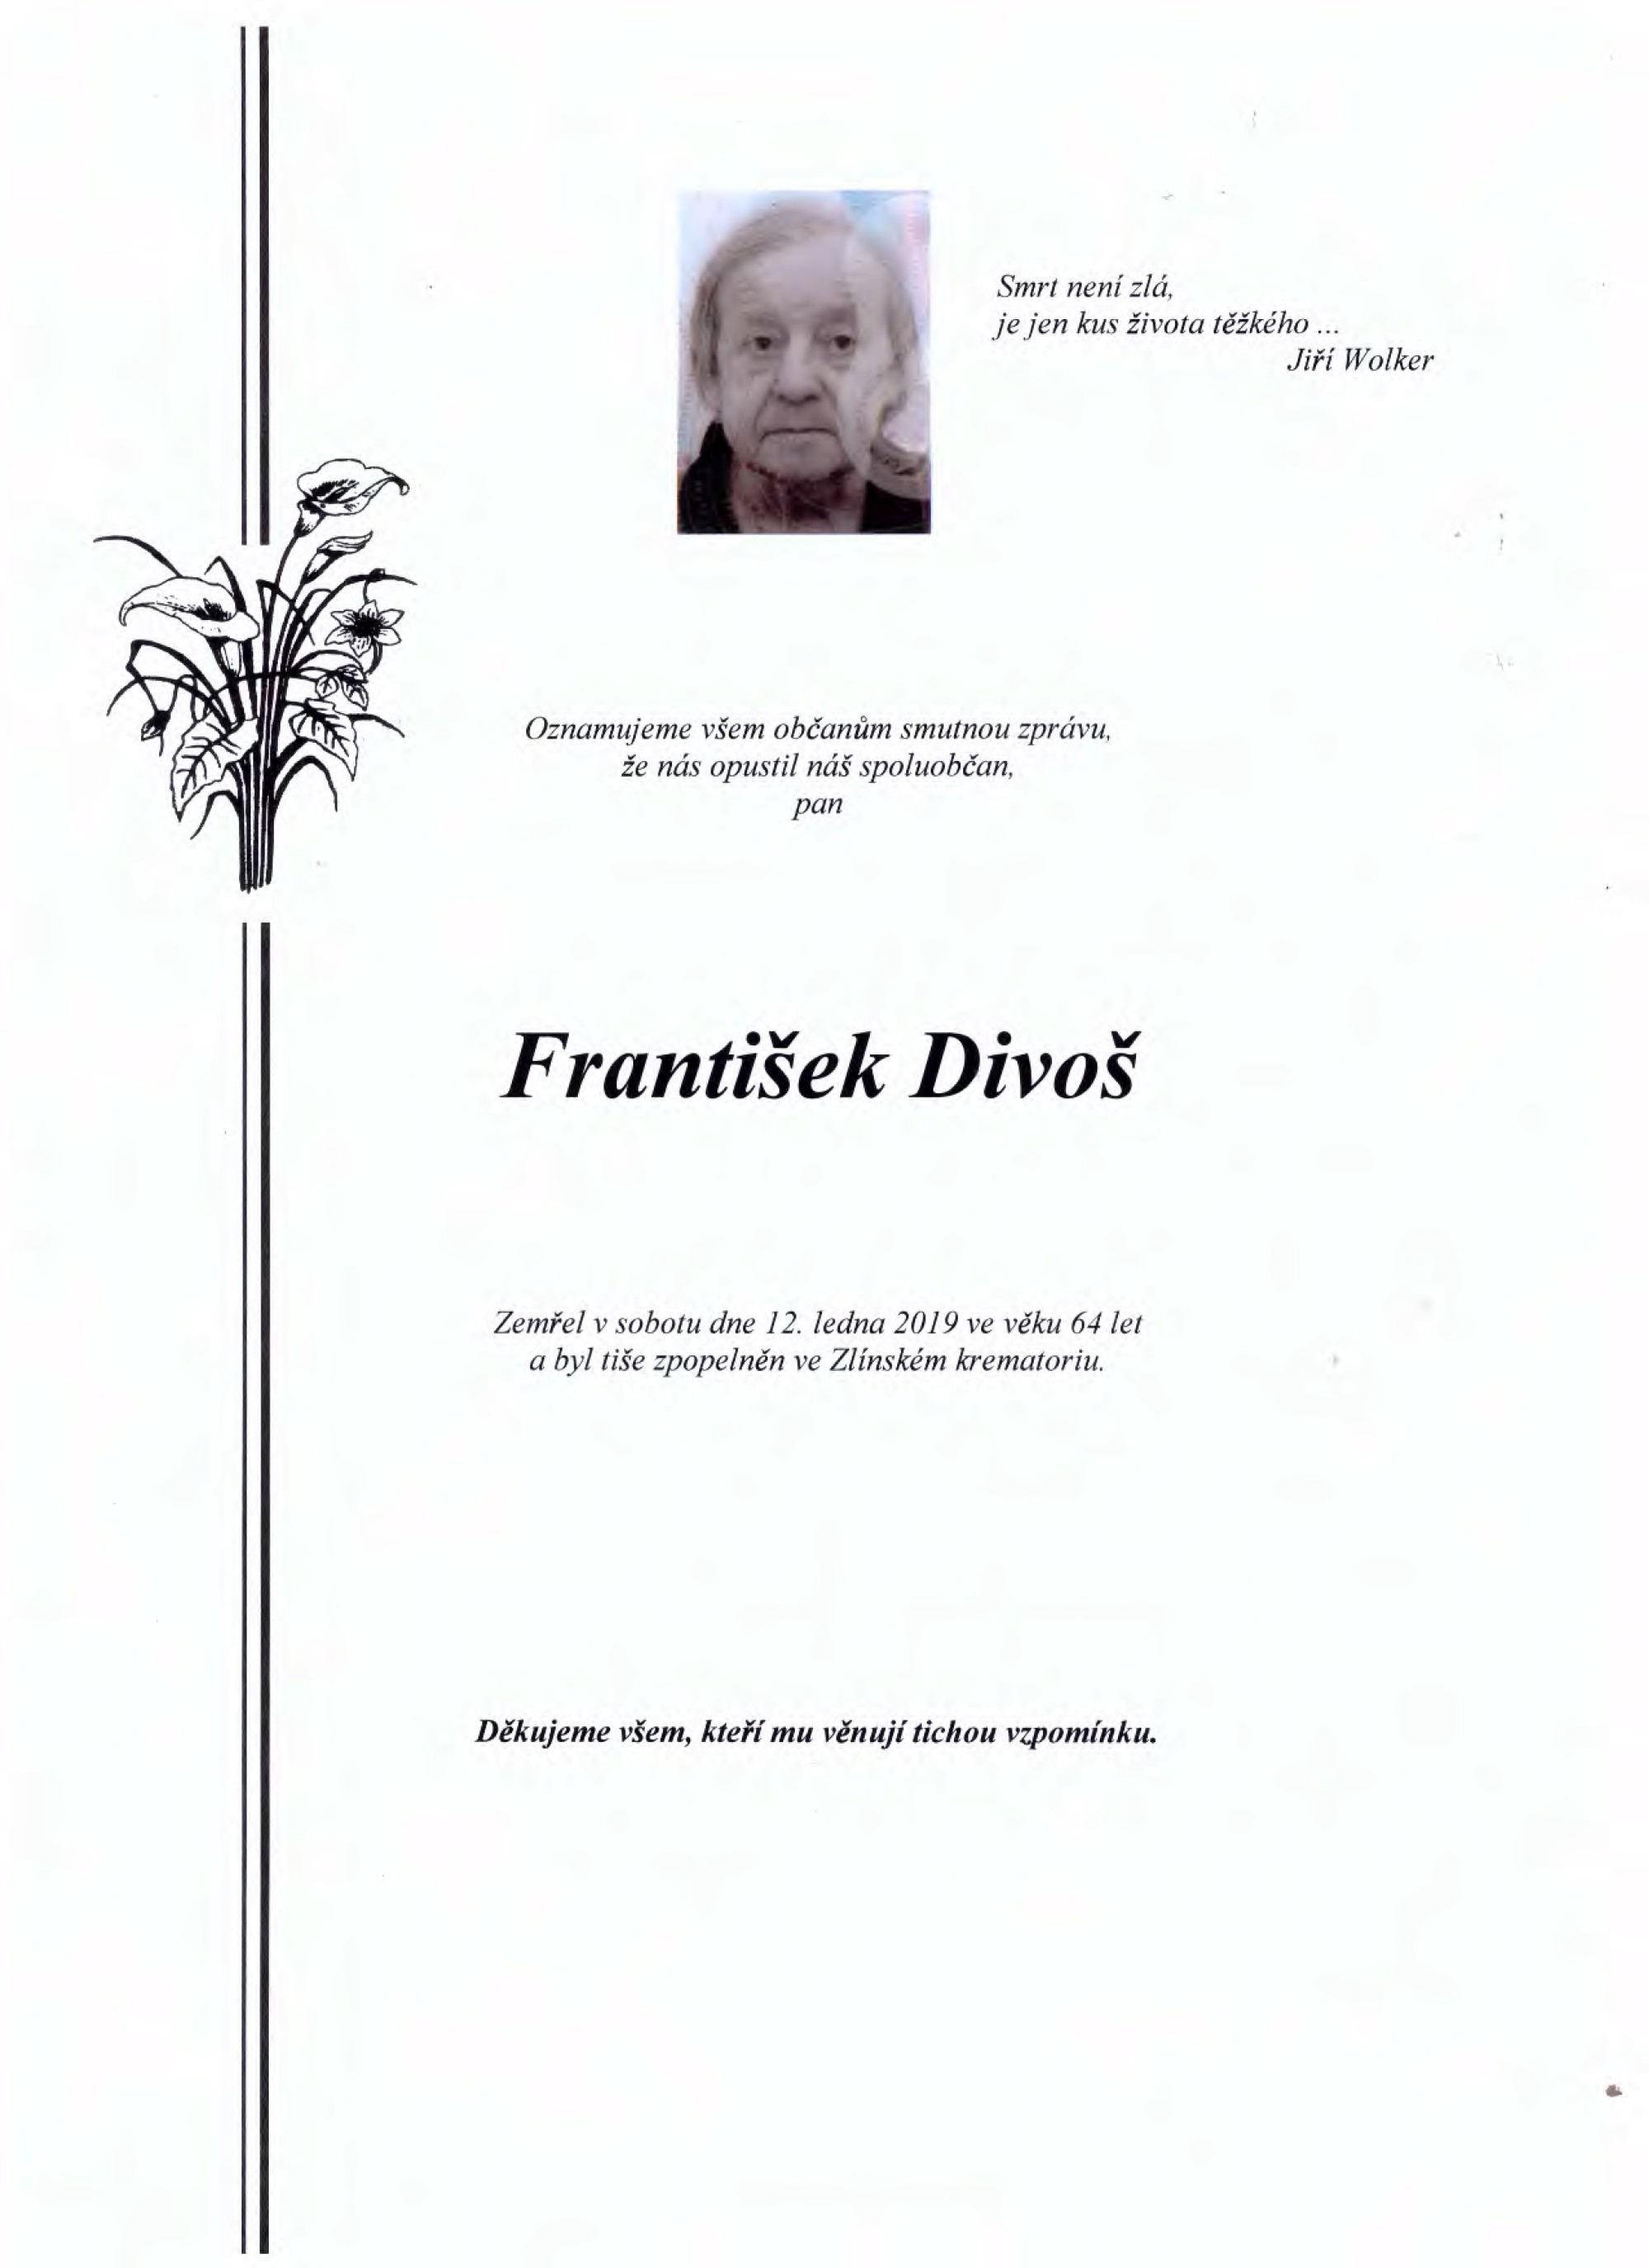 František Divoš